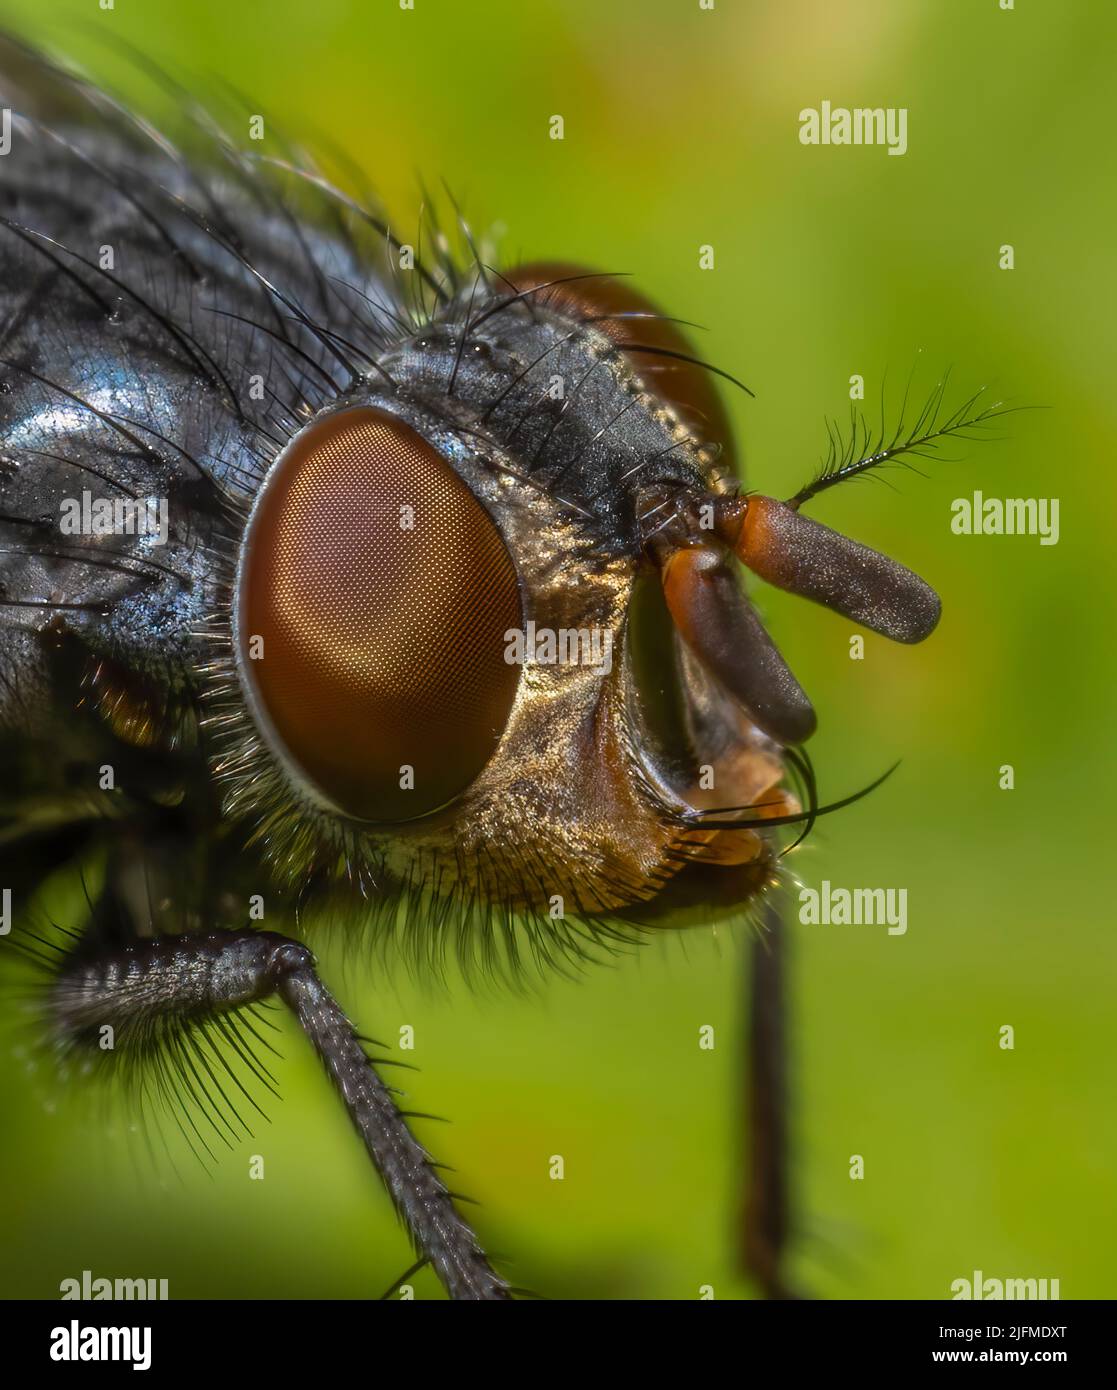 Un gros plan de la tête des espèces de mouches - Calliphora vicina montrant les grands yeux et de nombreuses protubérances Banque D'Images